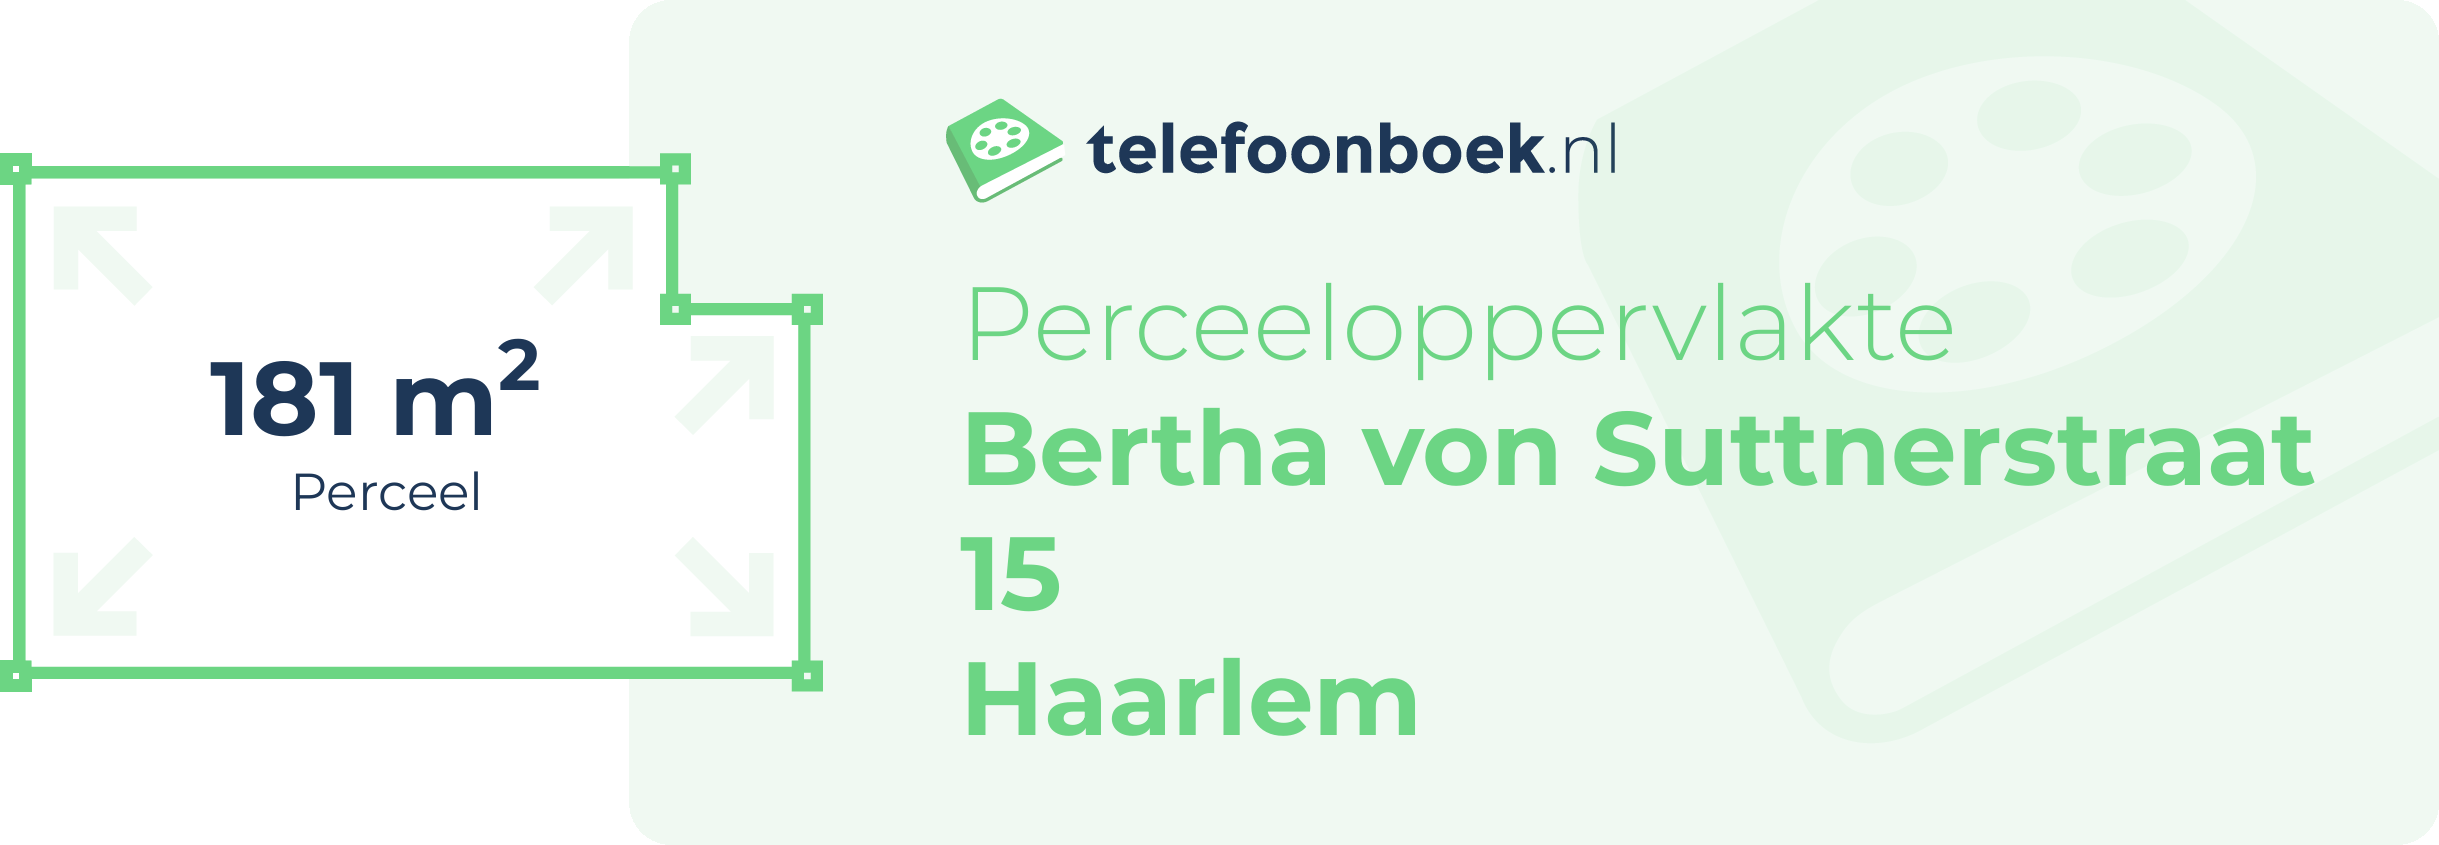 Perceeloppervlakte Bertha Von Suttnerstraat 15 Haarlem